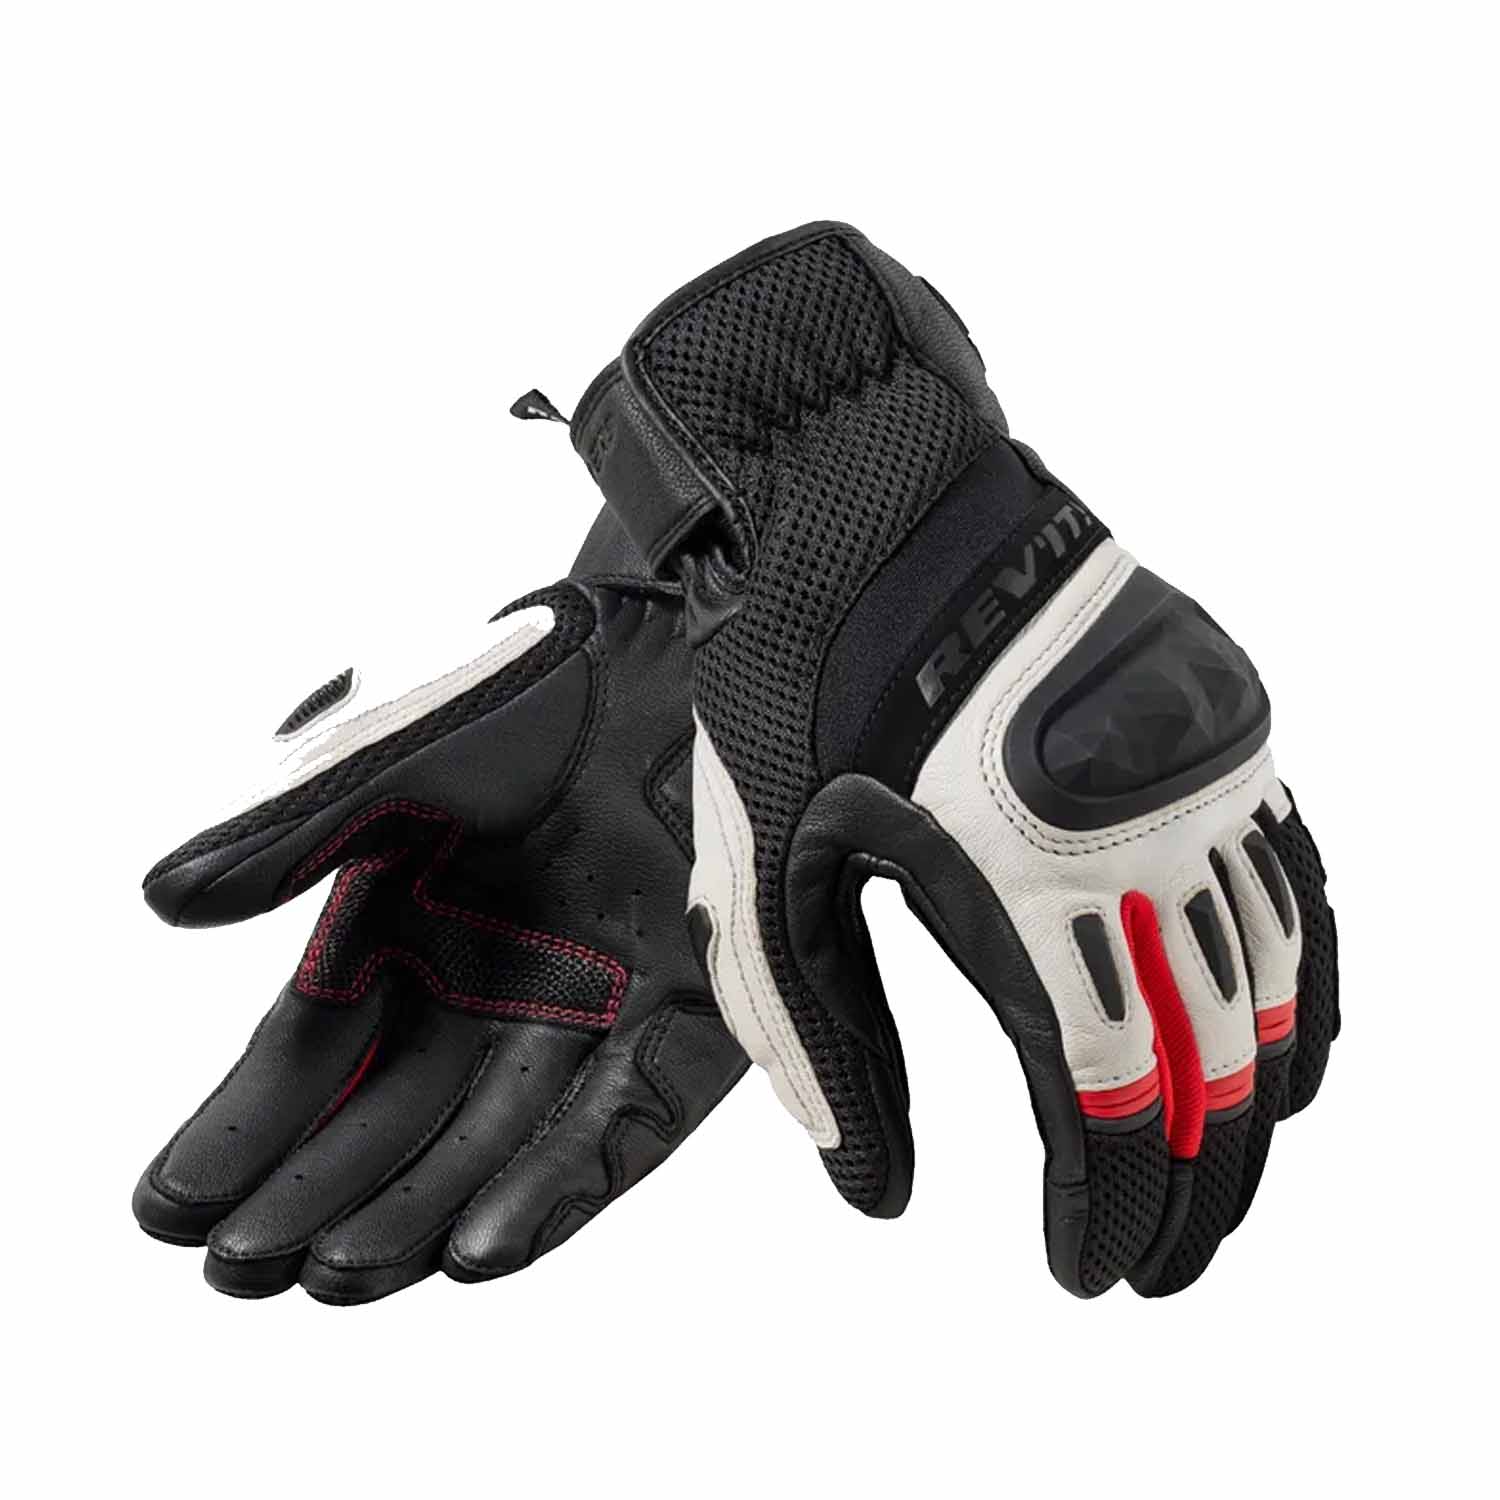 Image of REV'IT! Dirt 4 Gloves Black Red Size L EN